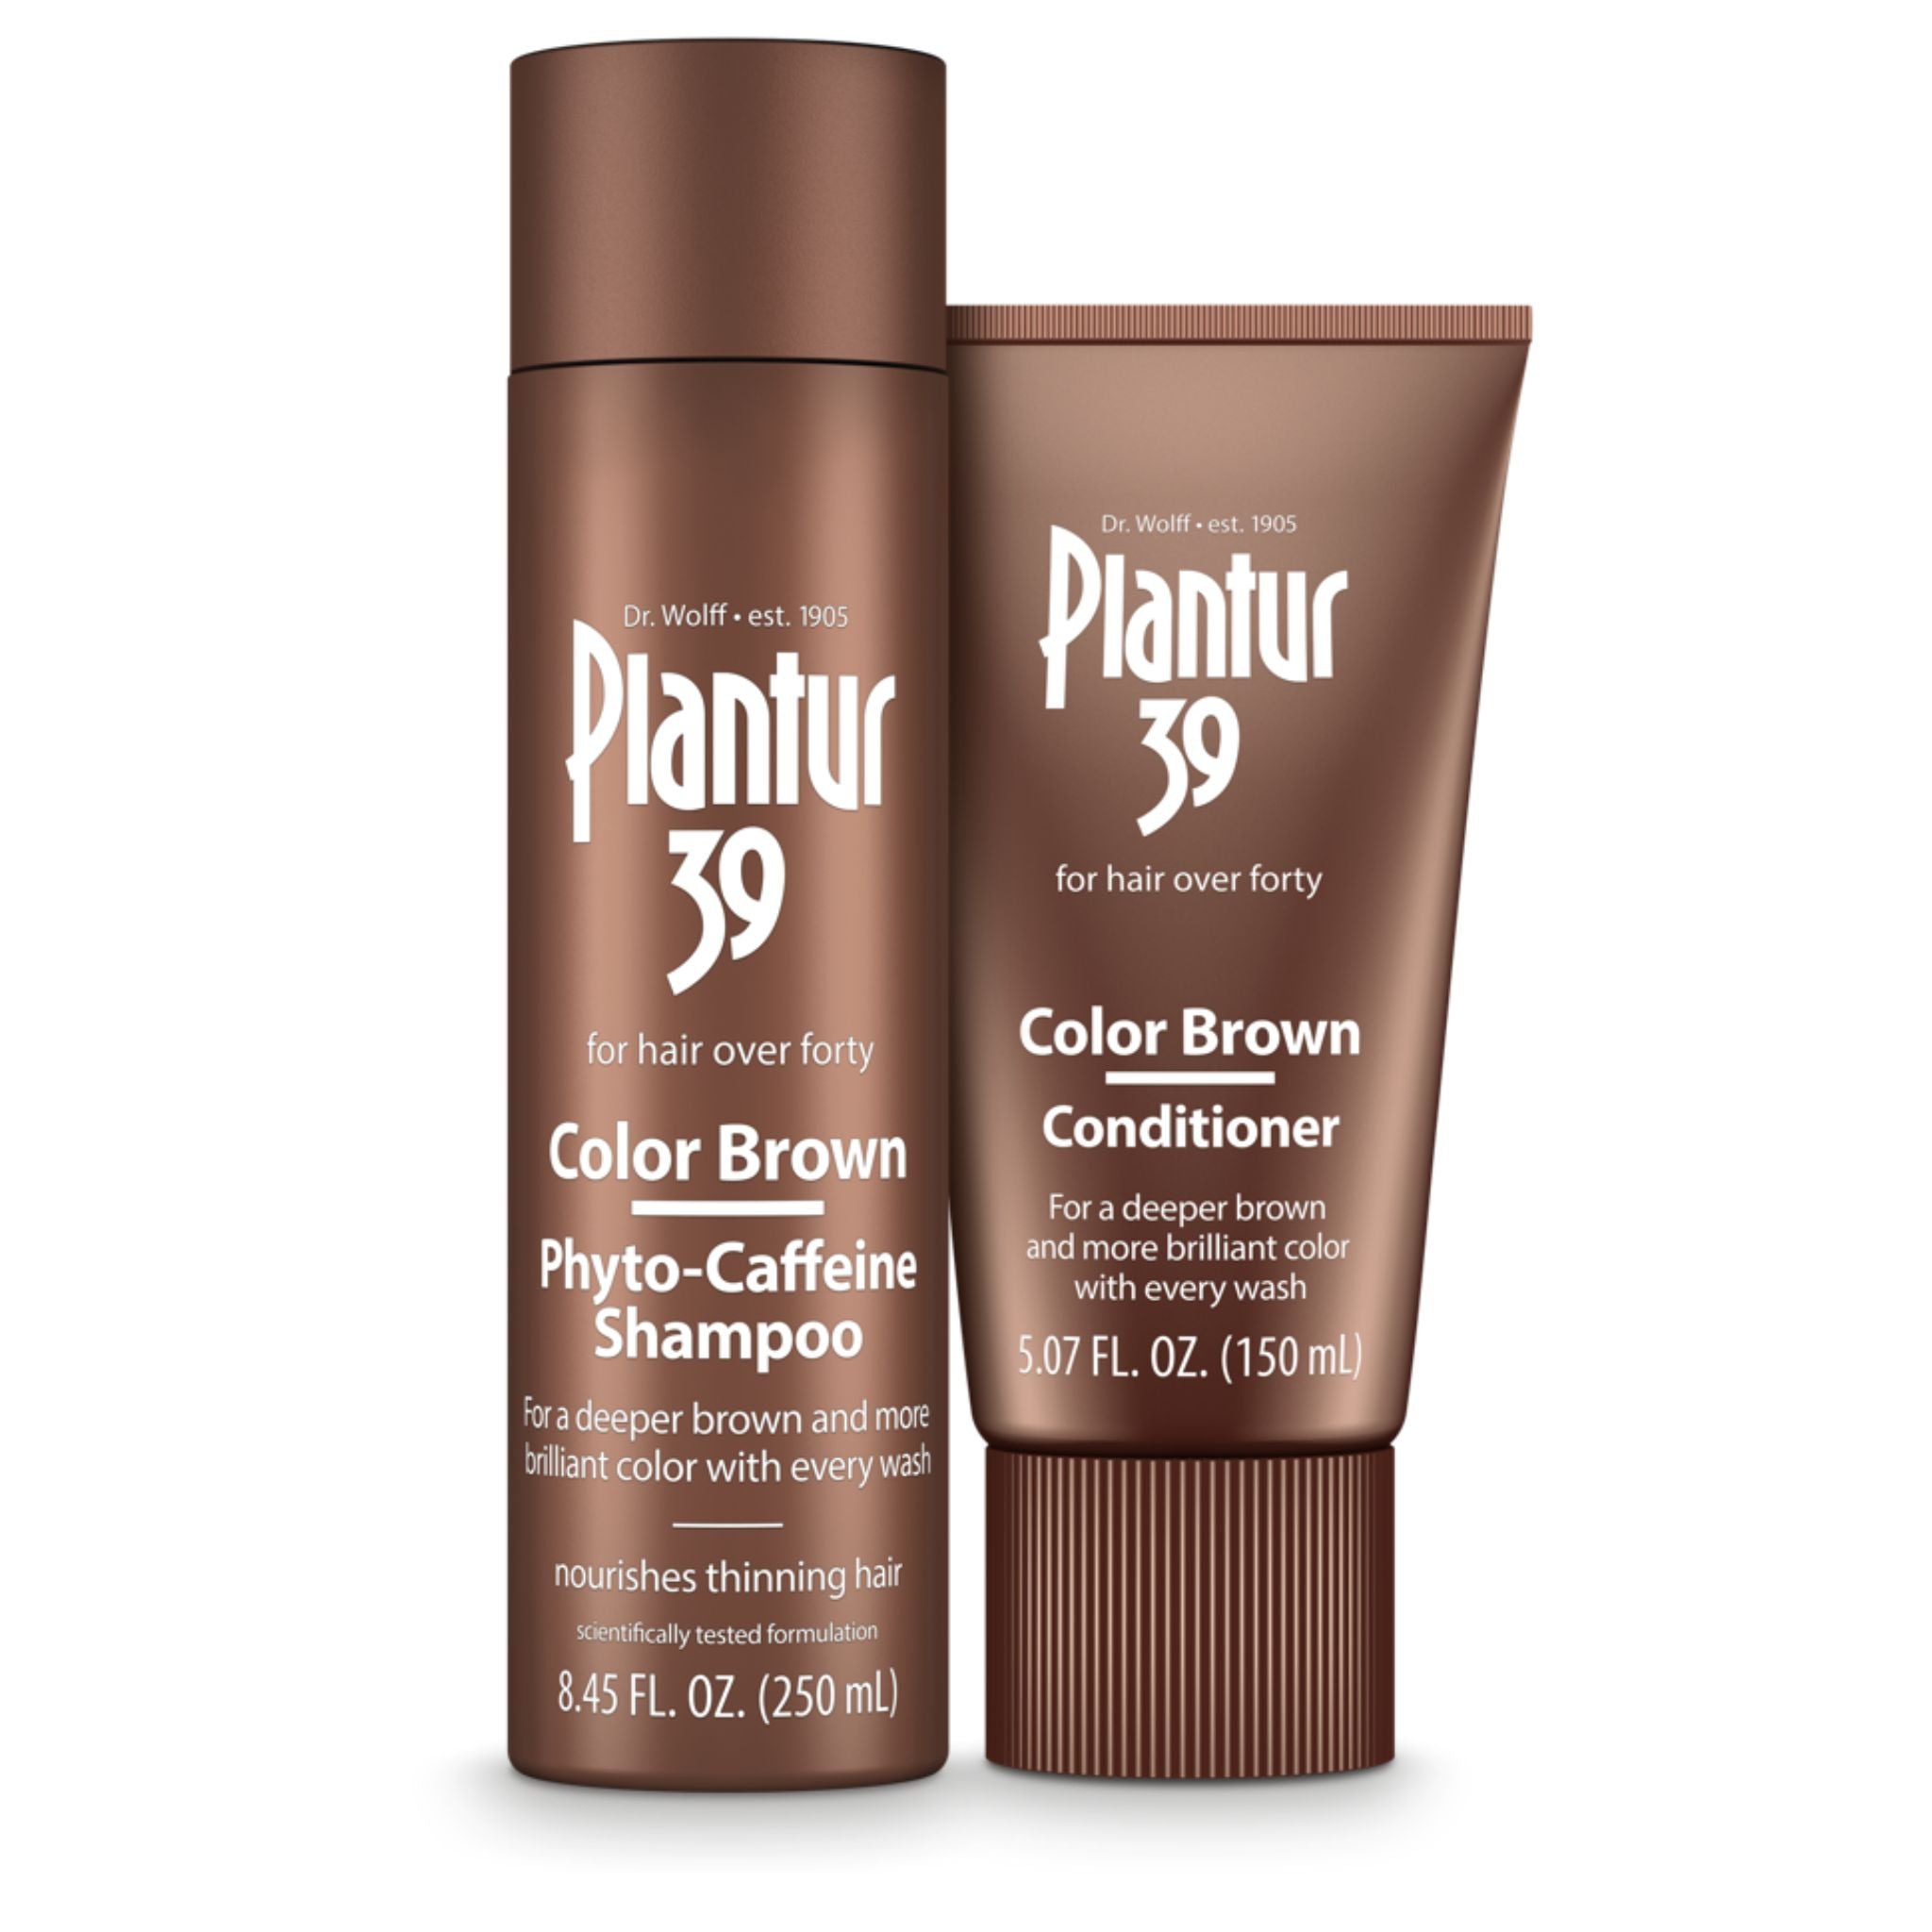 Plantur 39 Color Brown Shampoo and Conditioner Set